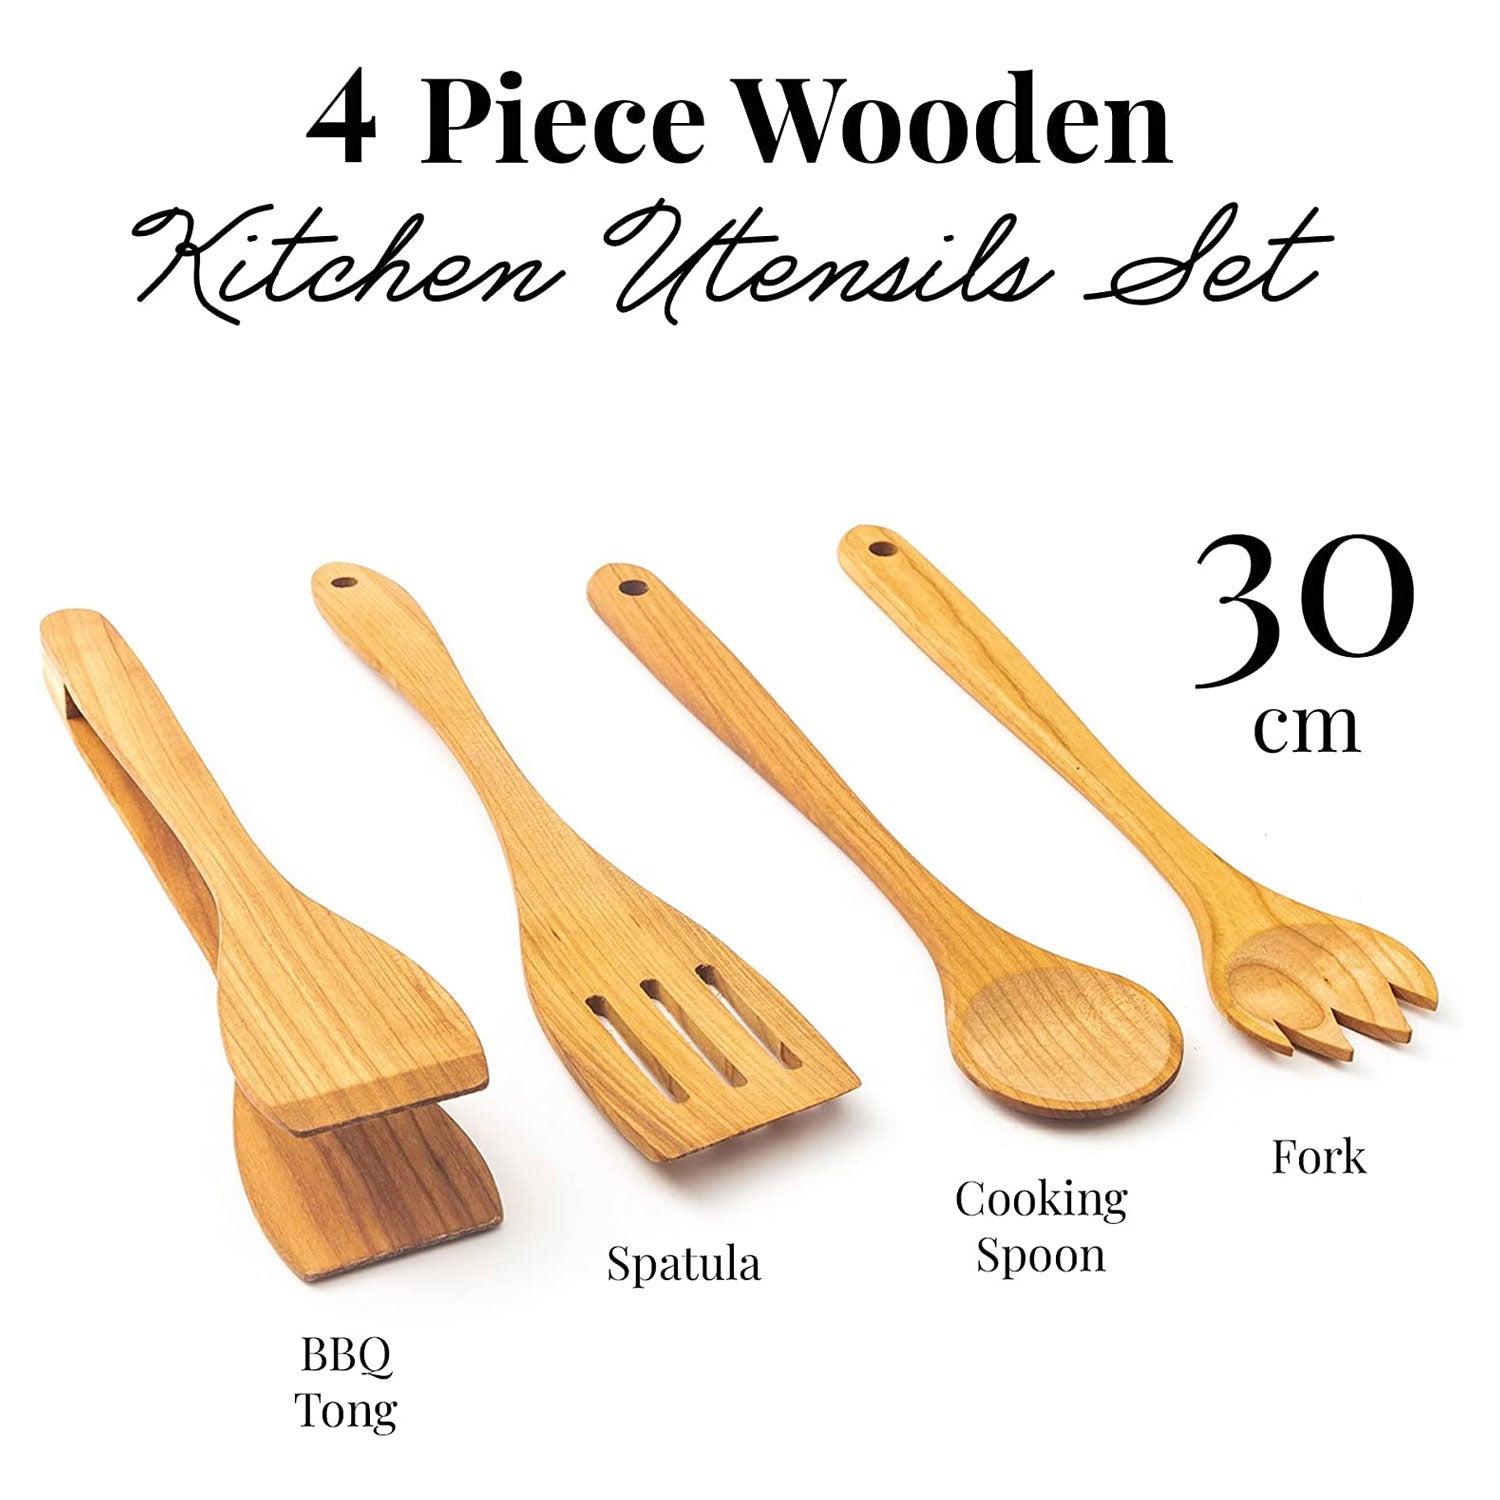 4 Wooden Utensils set